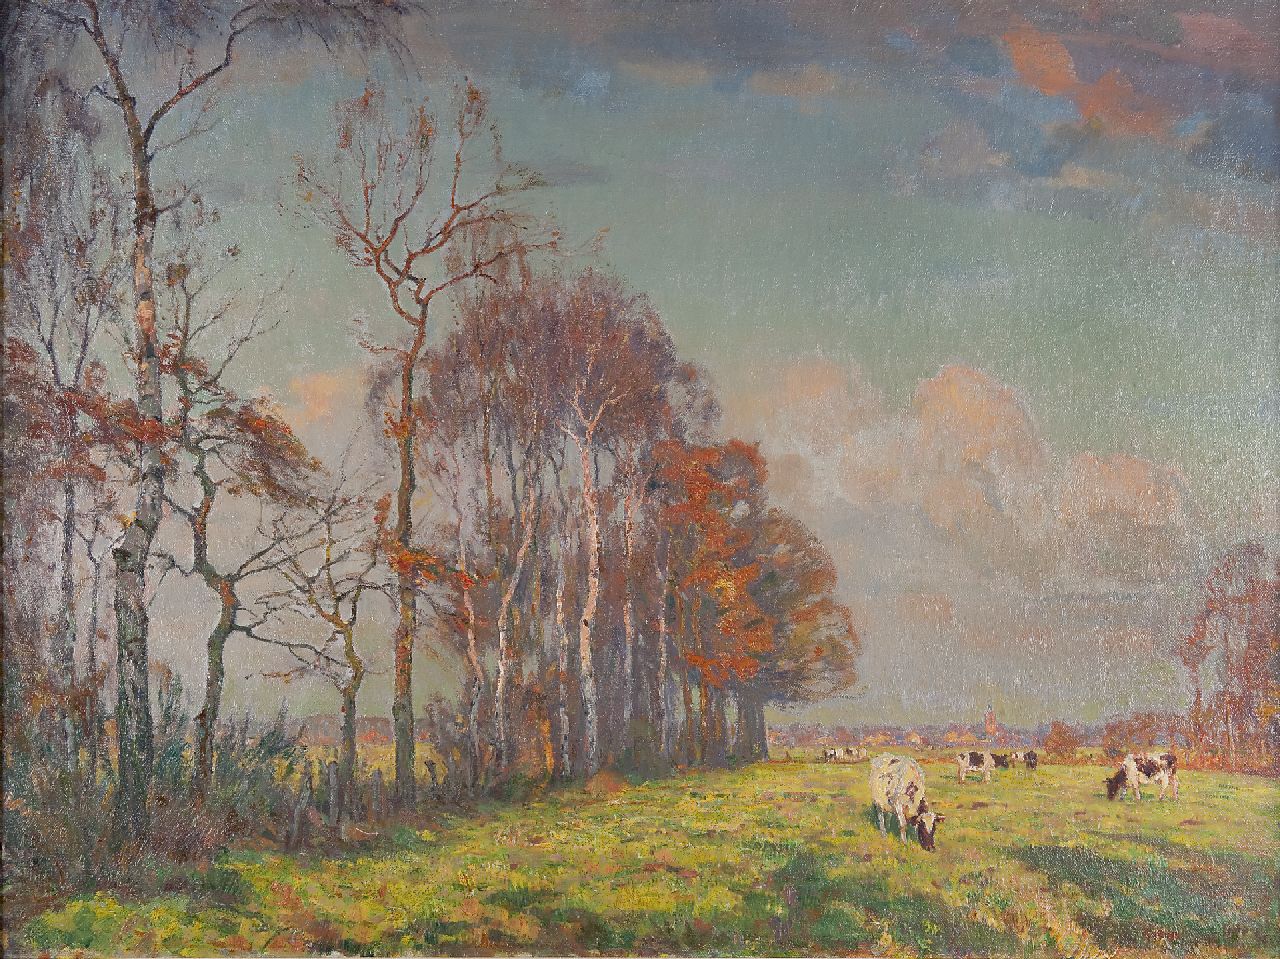 Meijer J.  | Johannes 'Johan' Meijer, Afternoon sun, oil on canvas 76.0 x 100.5 cm, signed l.r.